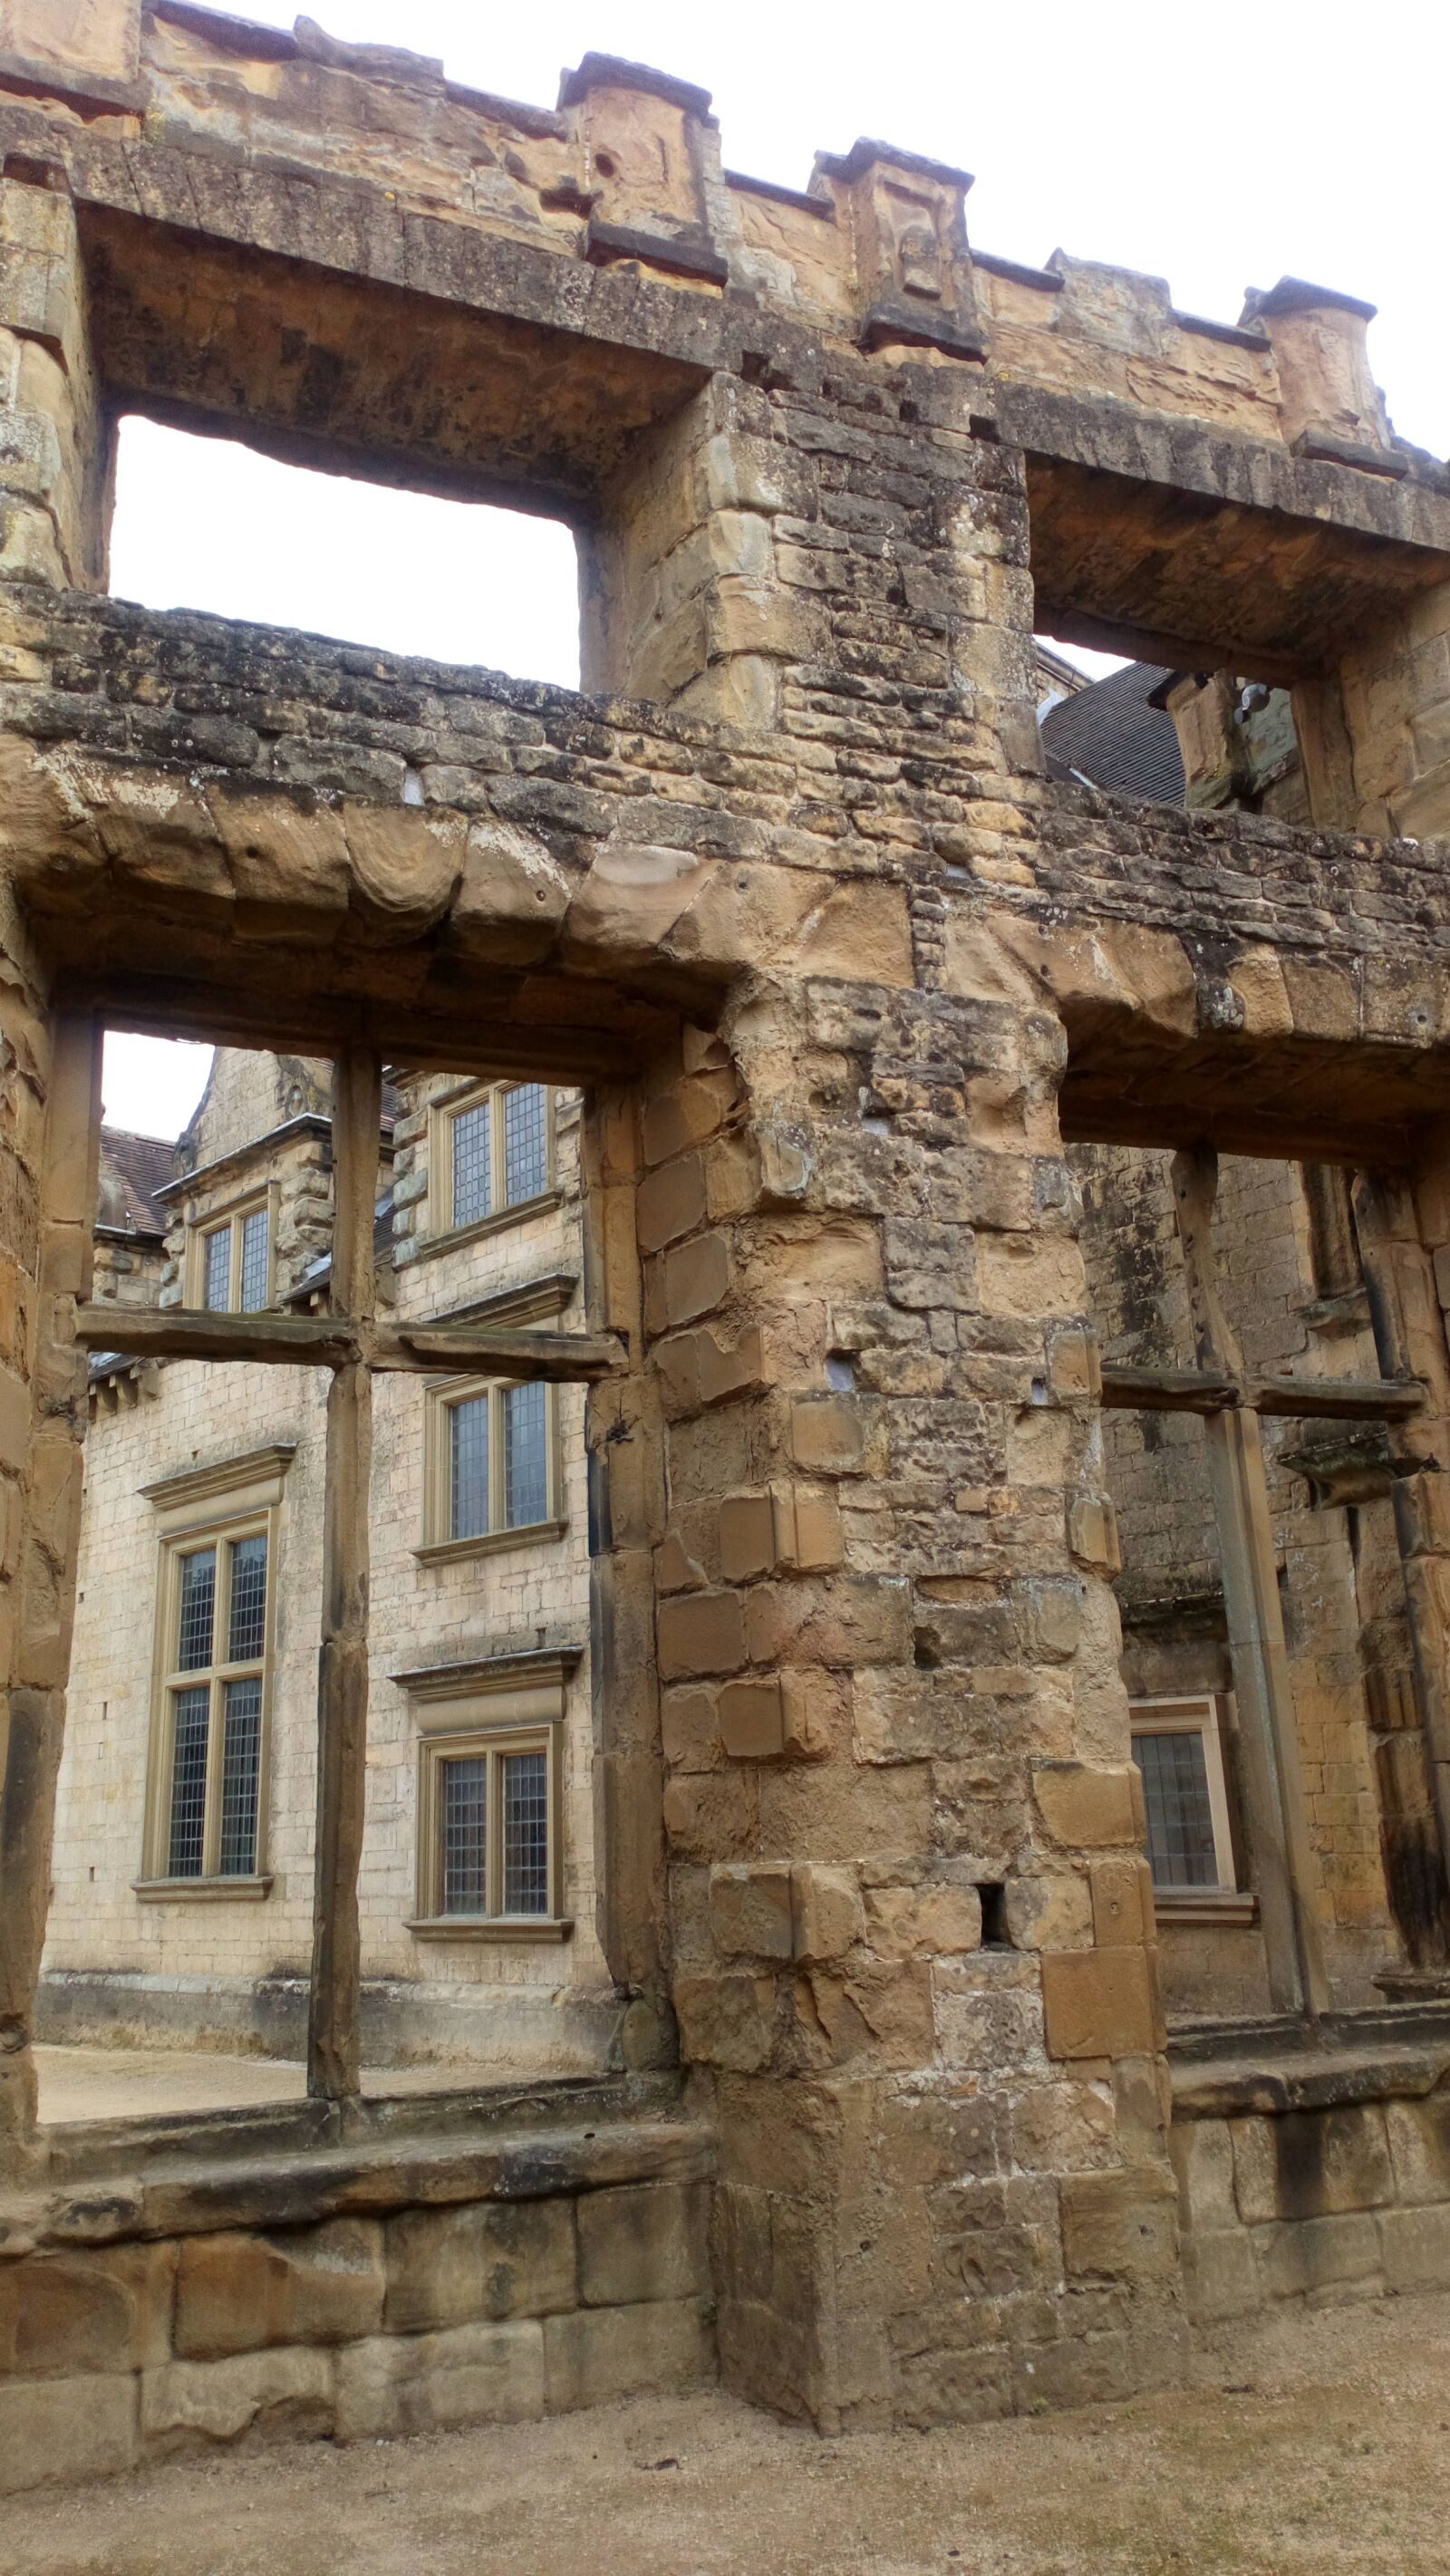 Sony Xperia L1 sample photo. Ruins, castle, masonry photography